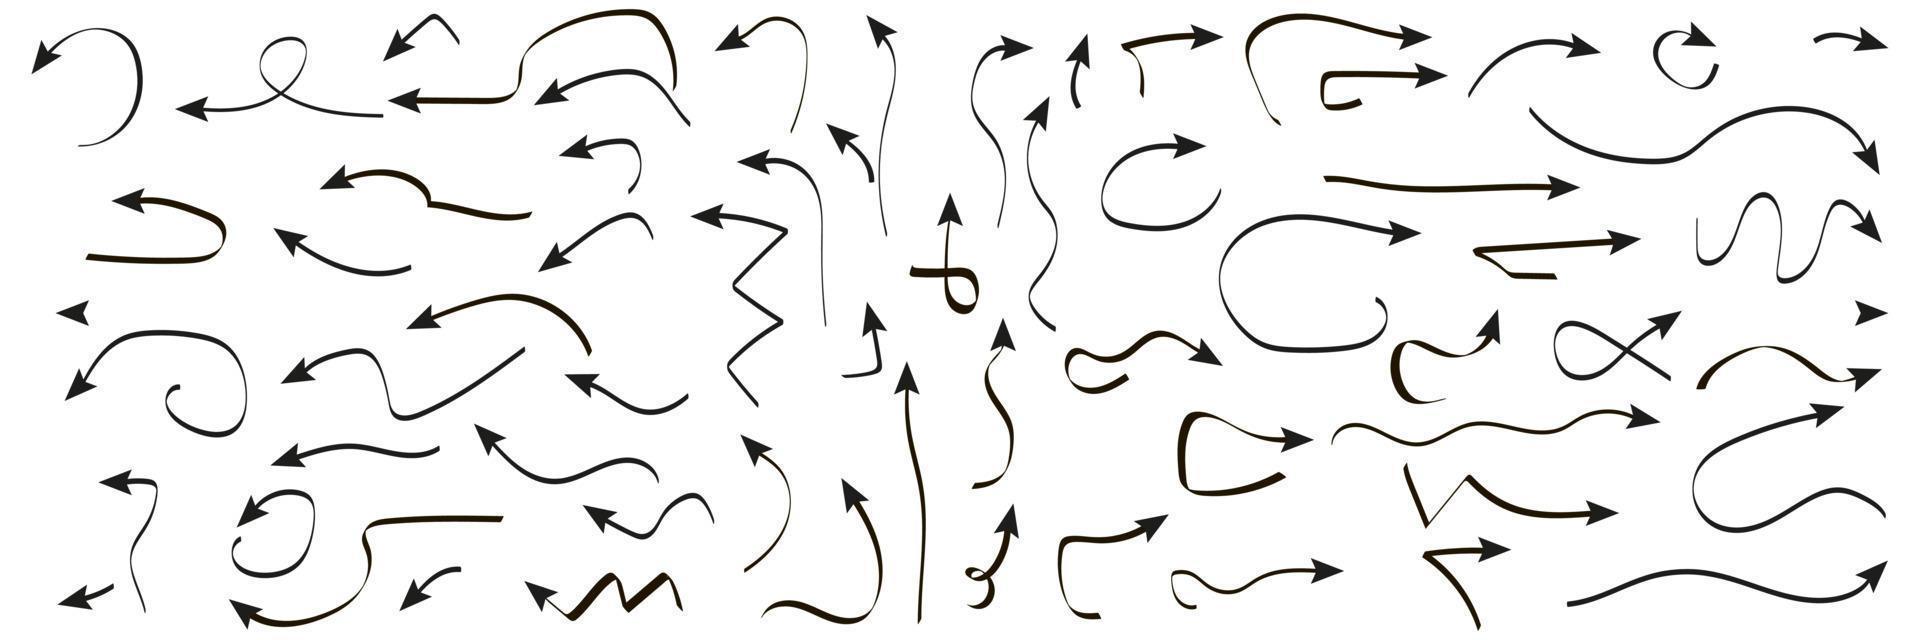 ensemble d'icônes de flèches dessinées à la main avec des directions différentes. illustration vectorielle sur fond blanc vecteur